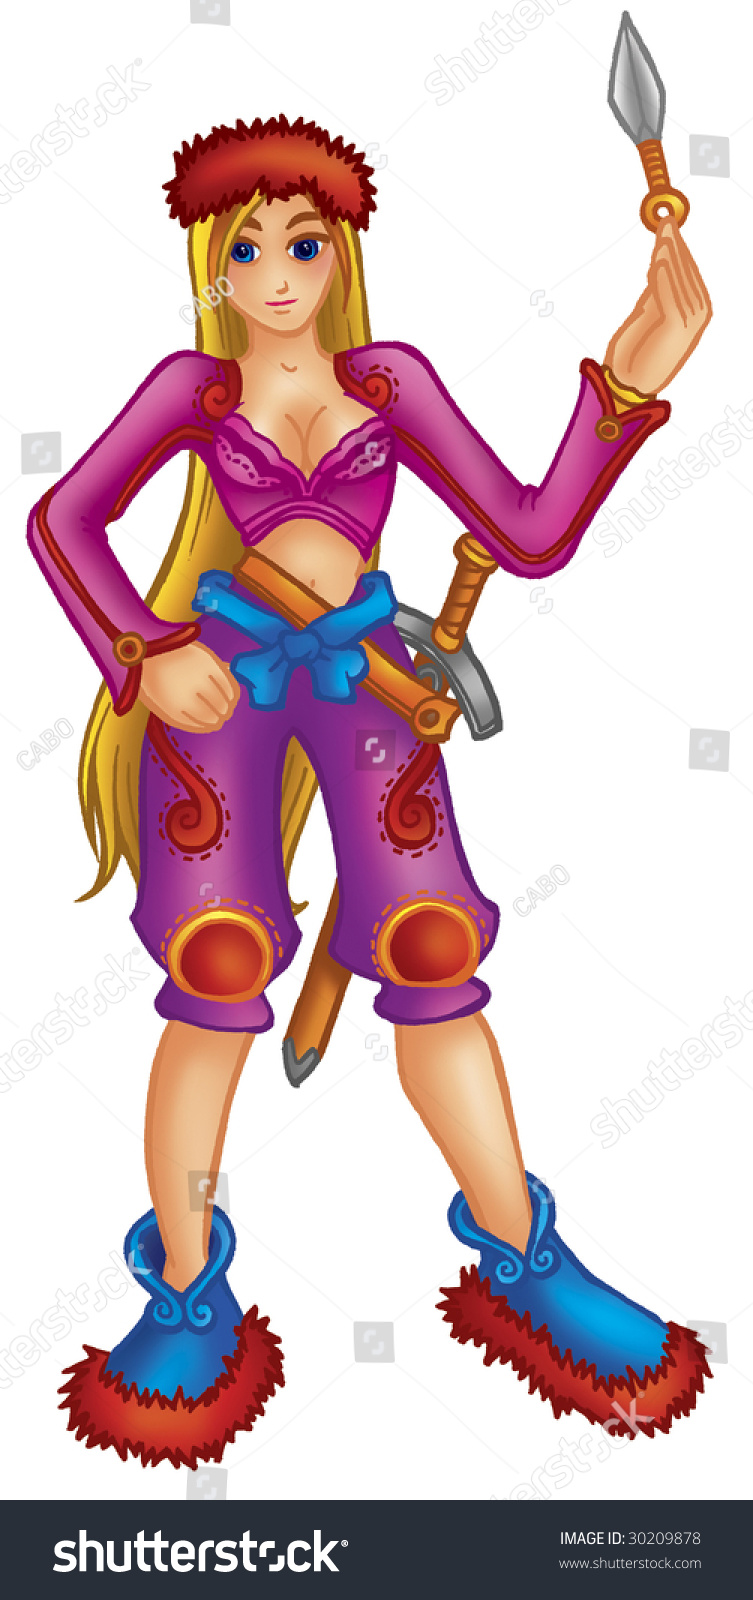 Download Edit Vectors Free Online - warrior princess | Shutterstock ...